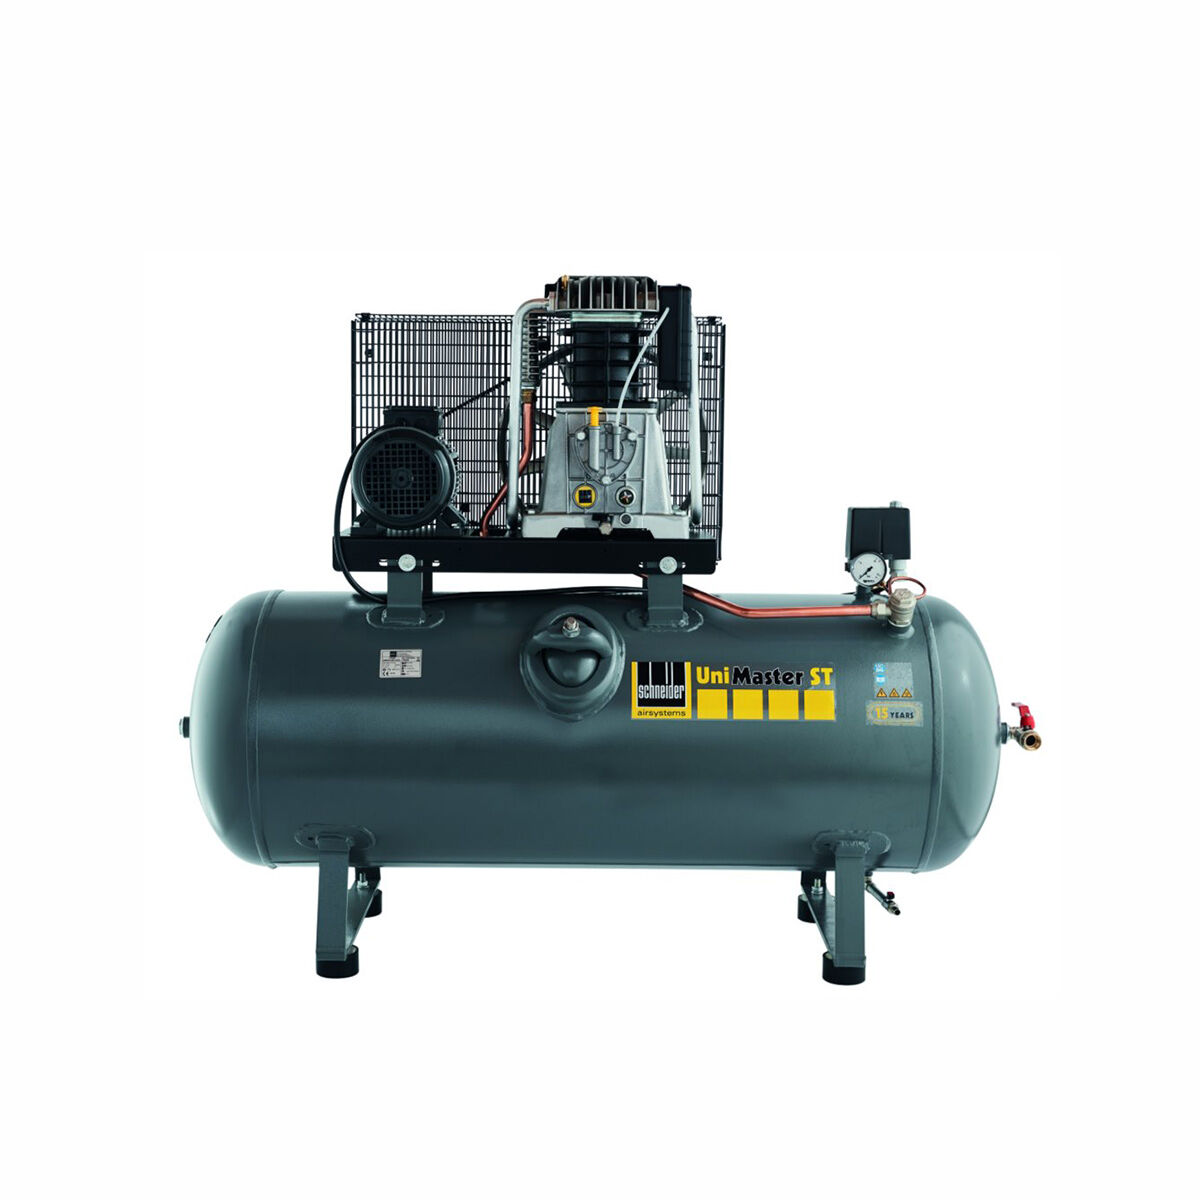 Schneider-Kompressor UNM STL 660-10-500 1121580520